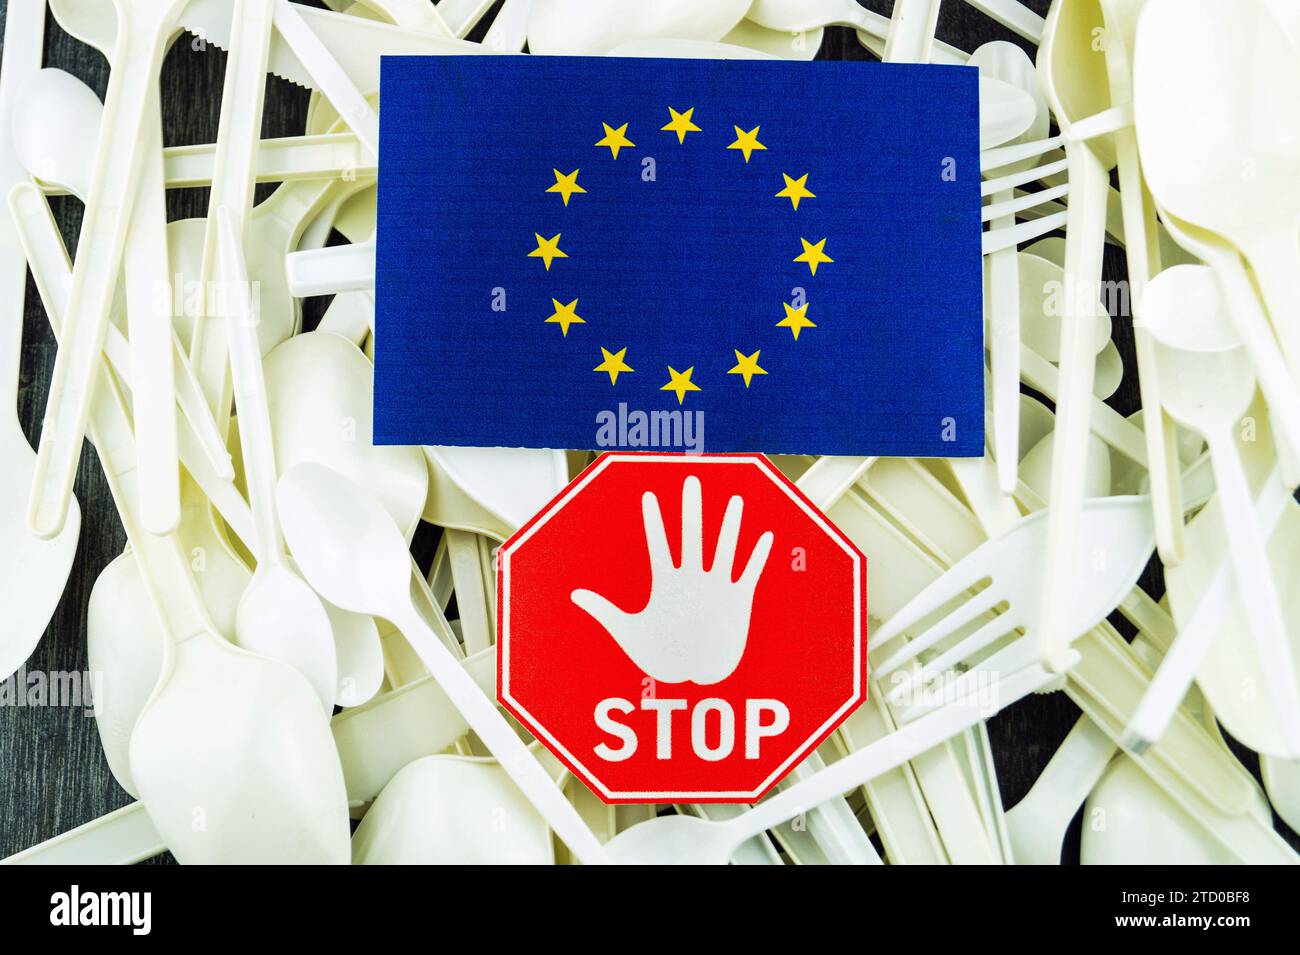 Kunststoffbesteck mit Stoppschild und EU-Flagge, symbolisches Bild für das Verbot von Kunststoff in der EU Stockfoto